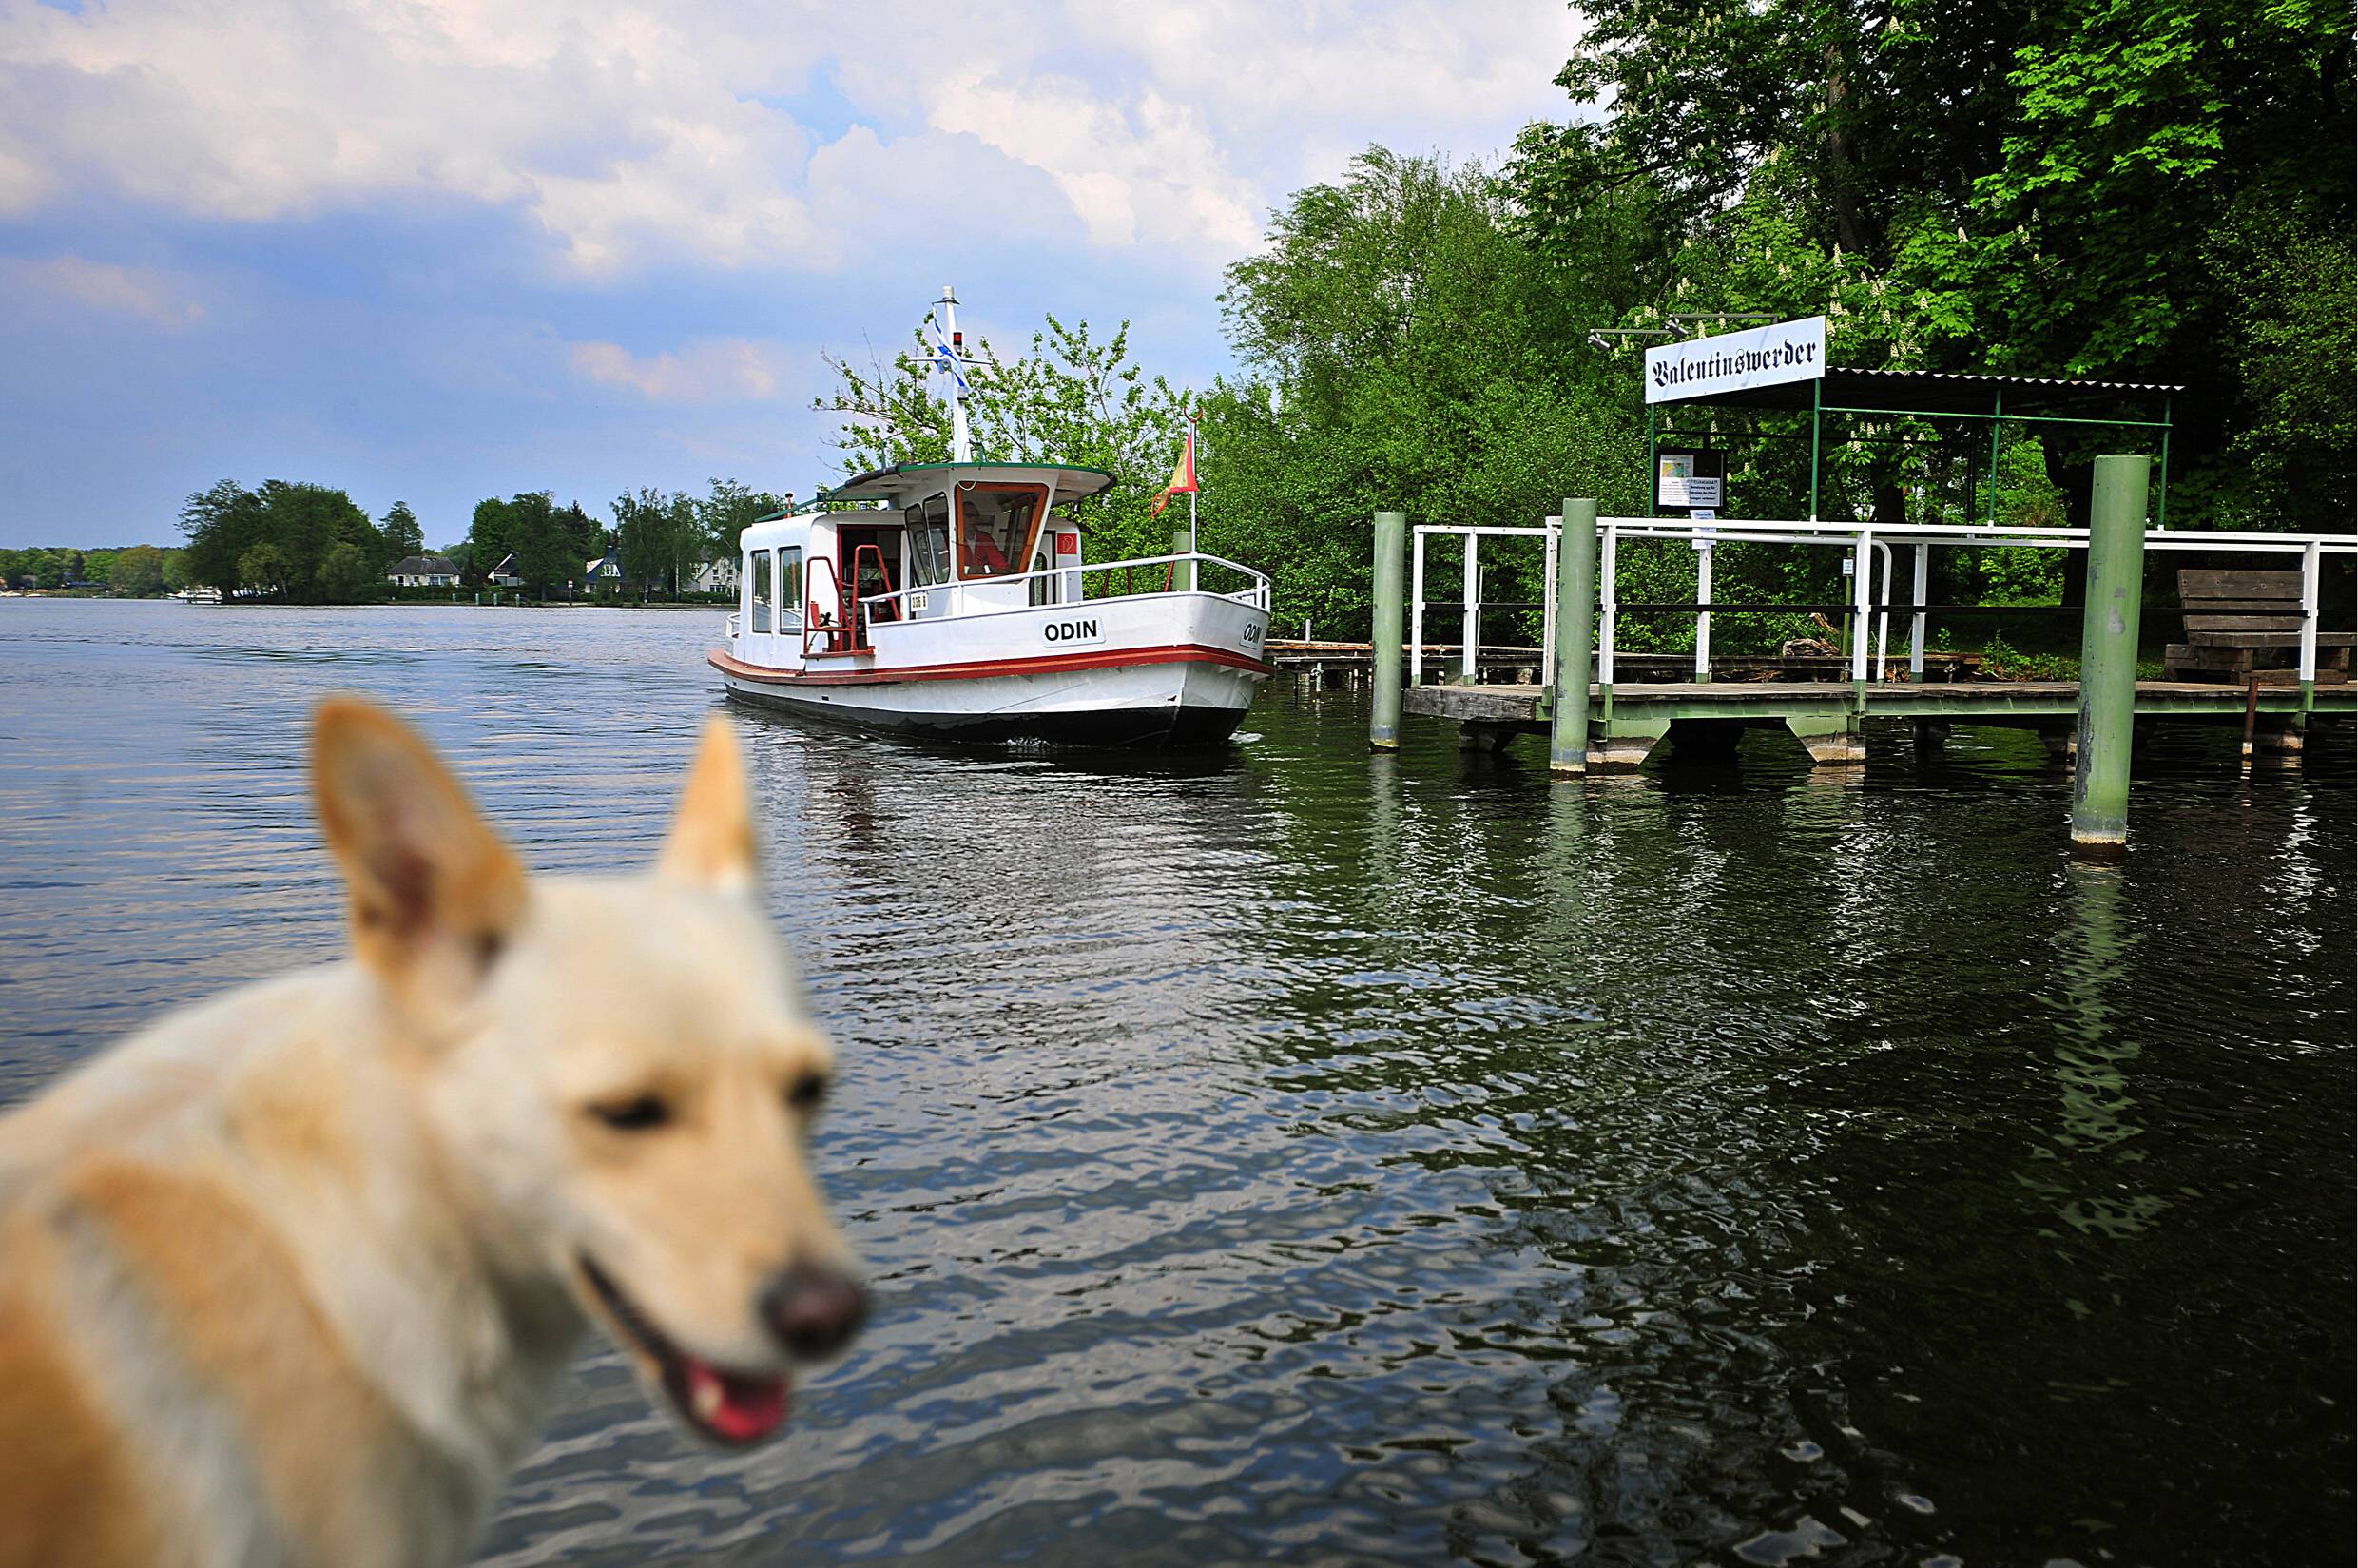 Schiff (und Hund) ahoi – mit dem Boot geht es nach Valentinswerder. Foto: Imago Images/Lambert